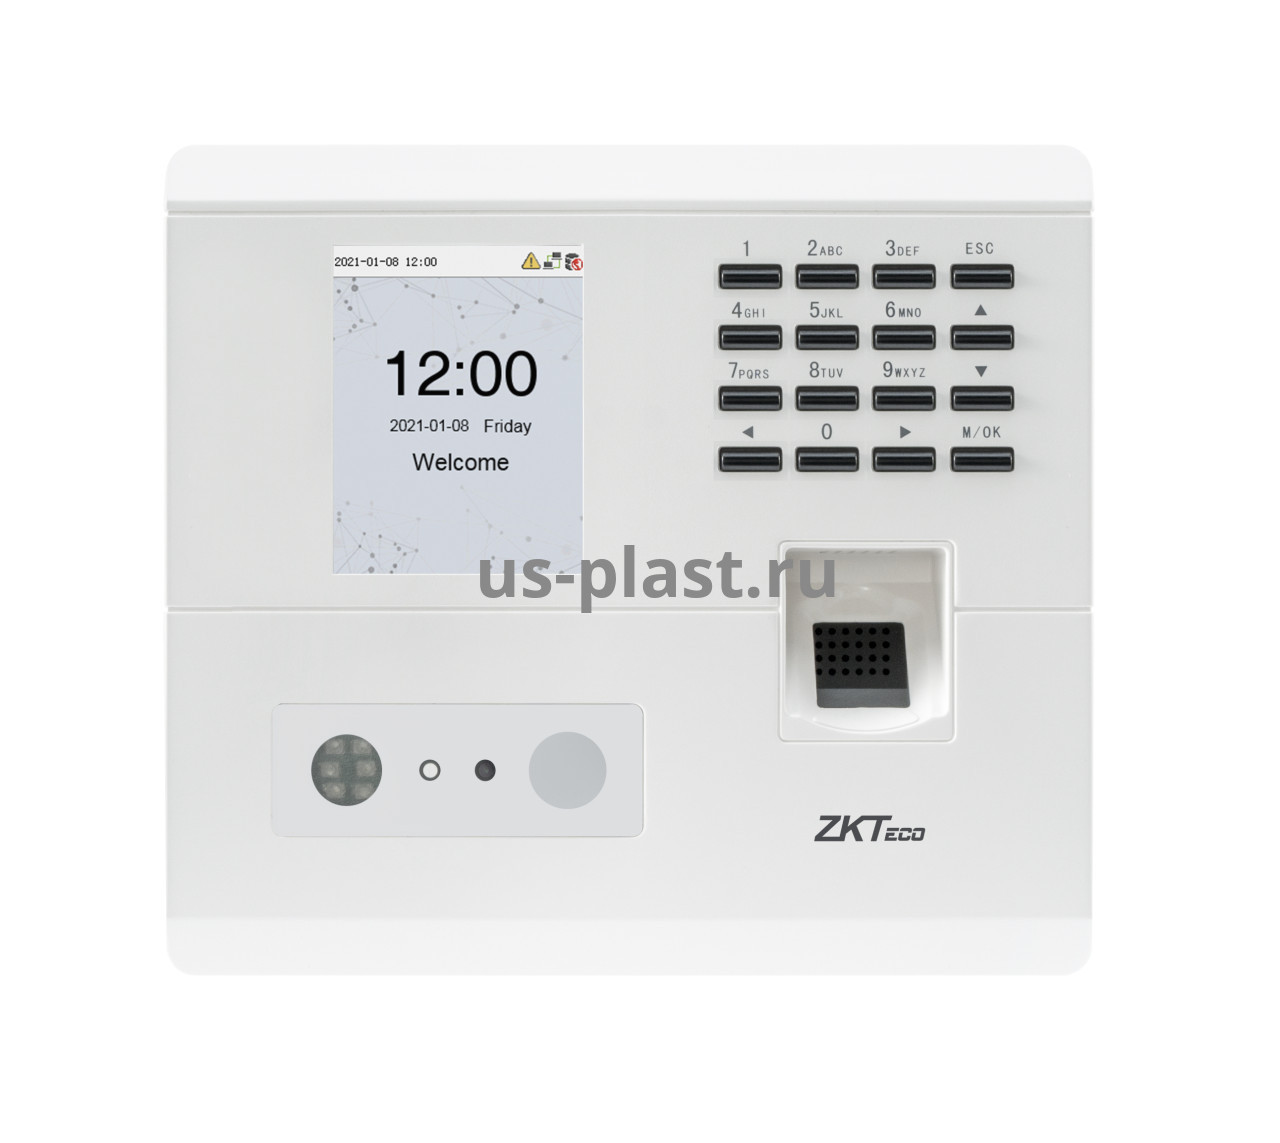 ZKTeco MB10-VL [EM], биометрический терминал учета рабочего времени и контроля доступа. Фото N6